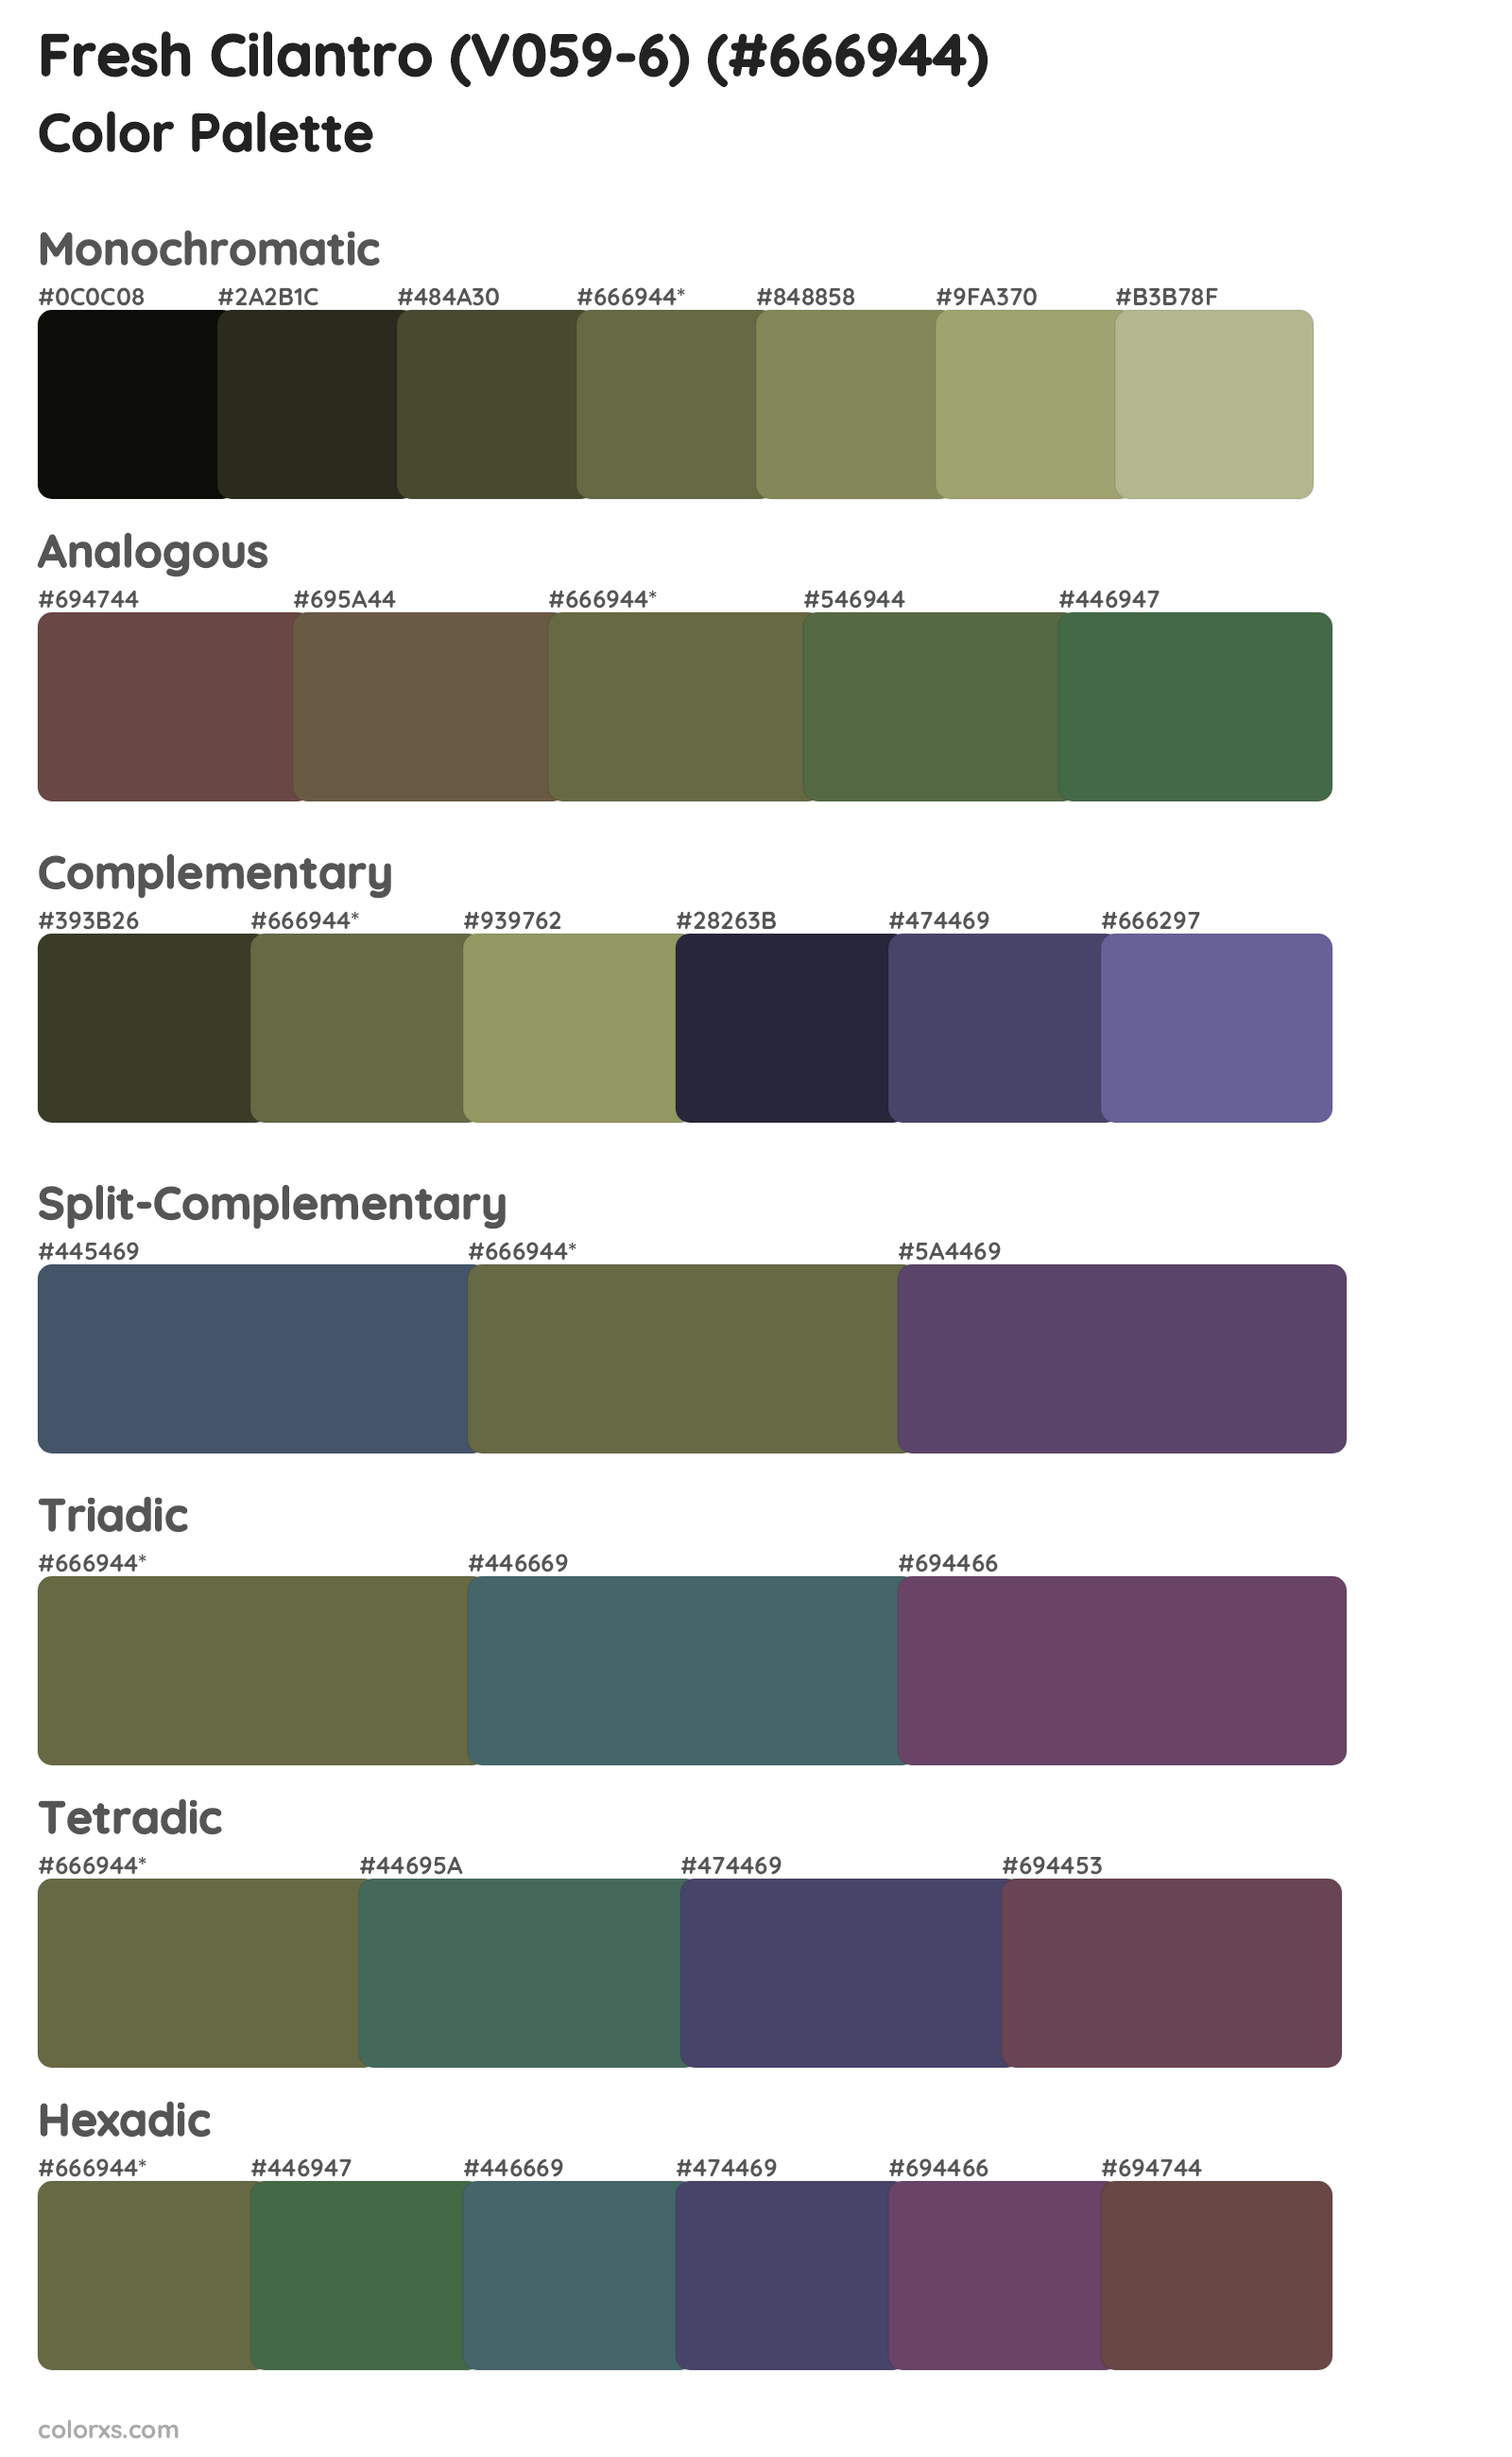 Fresh Cilantro (V059-6) Color Scheme Palettes